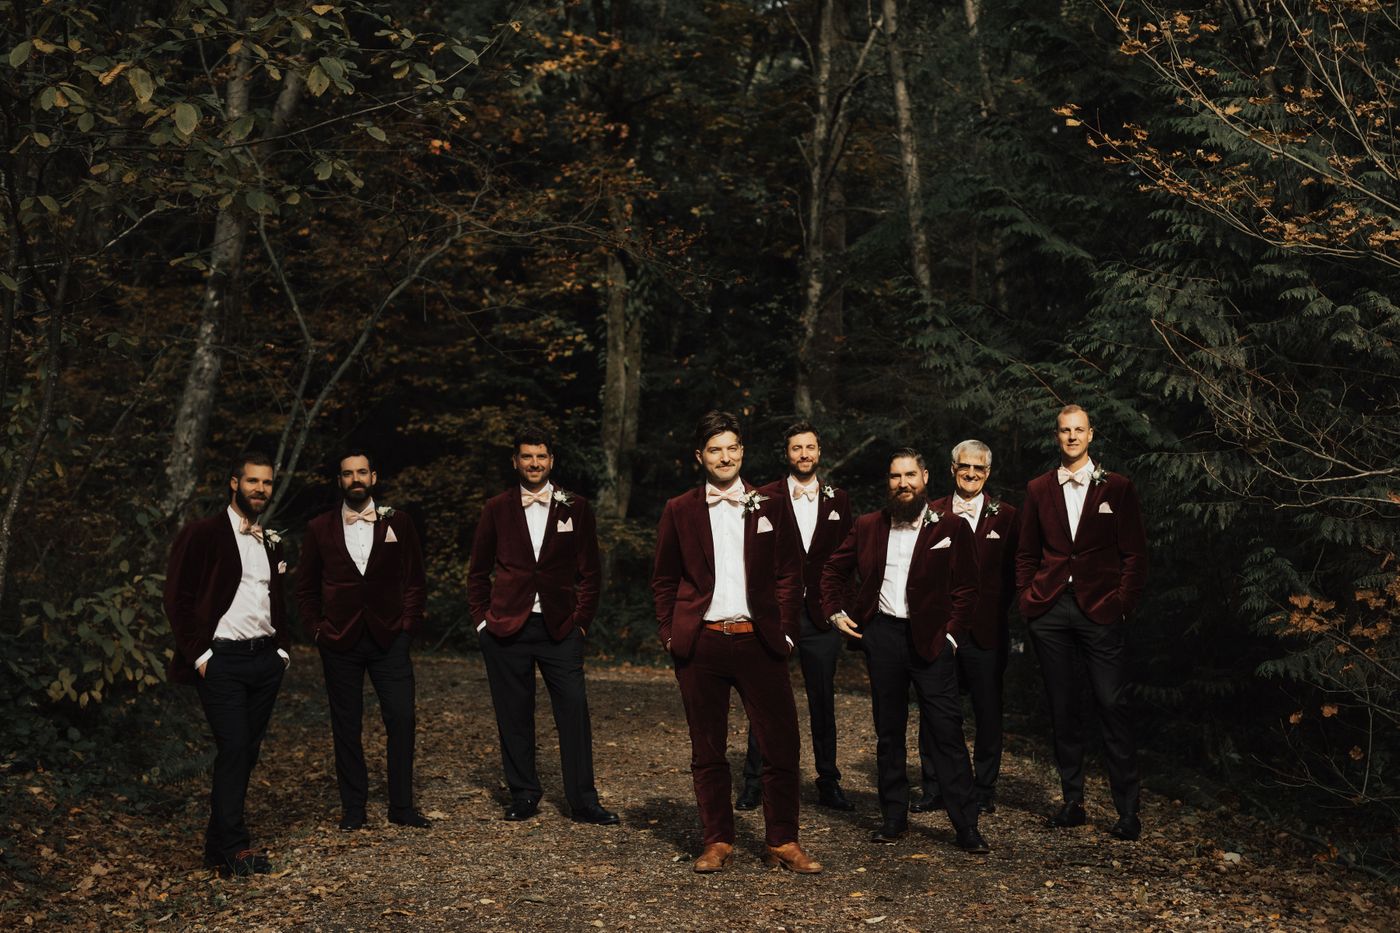 Image of groom and groomsmen dressed in red velvet suits